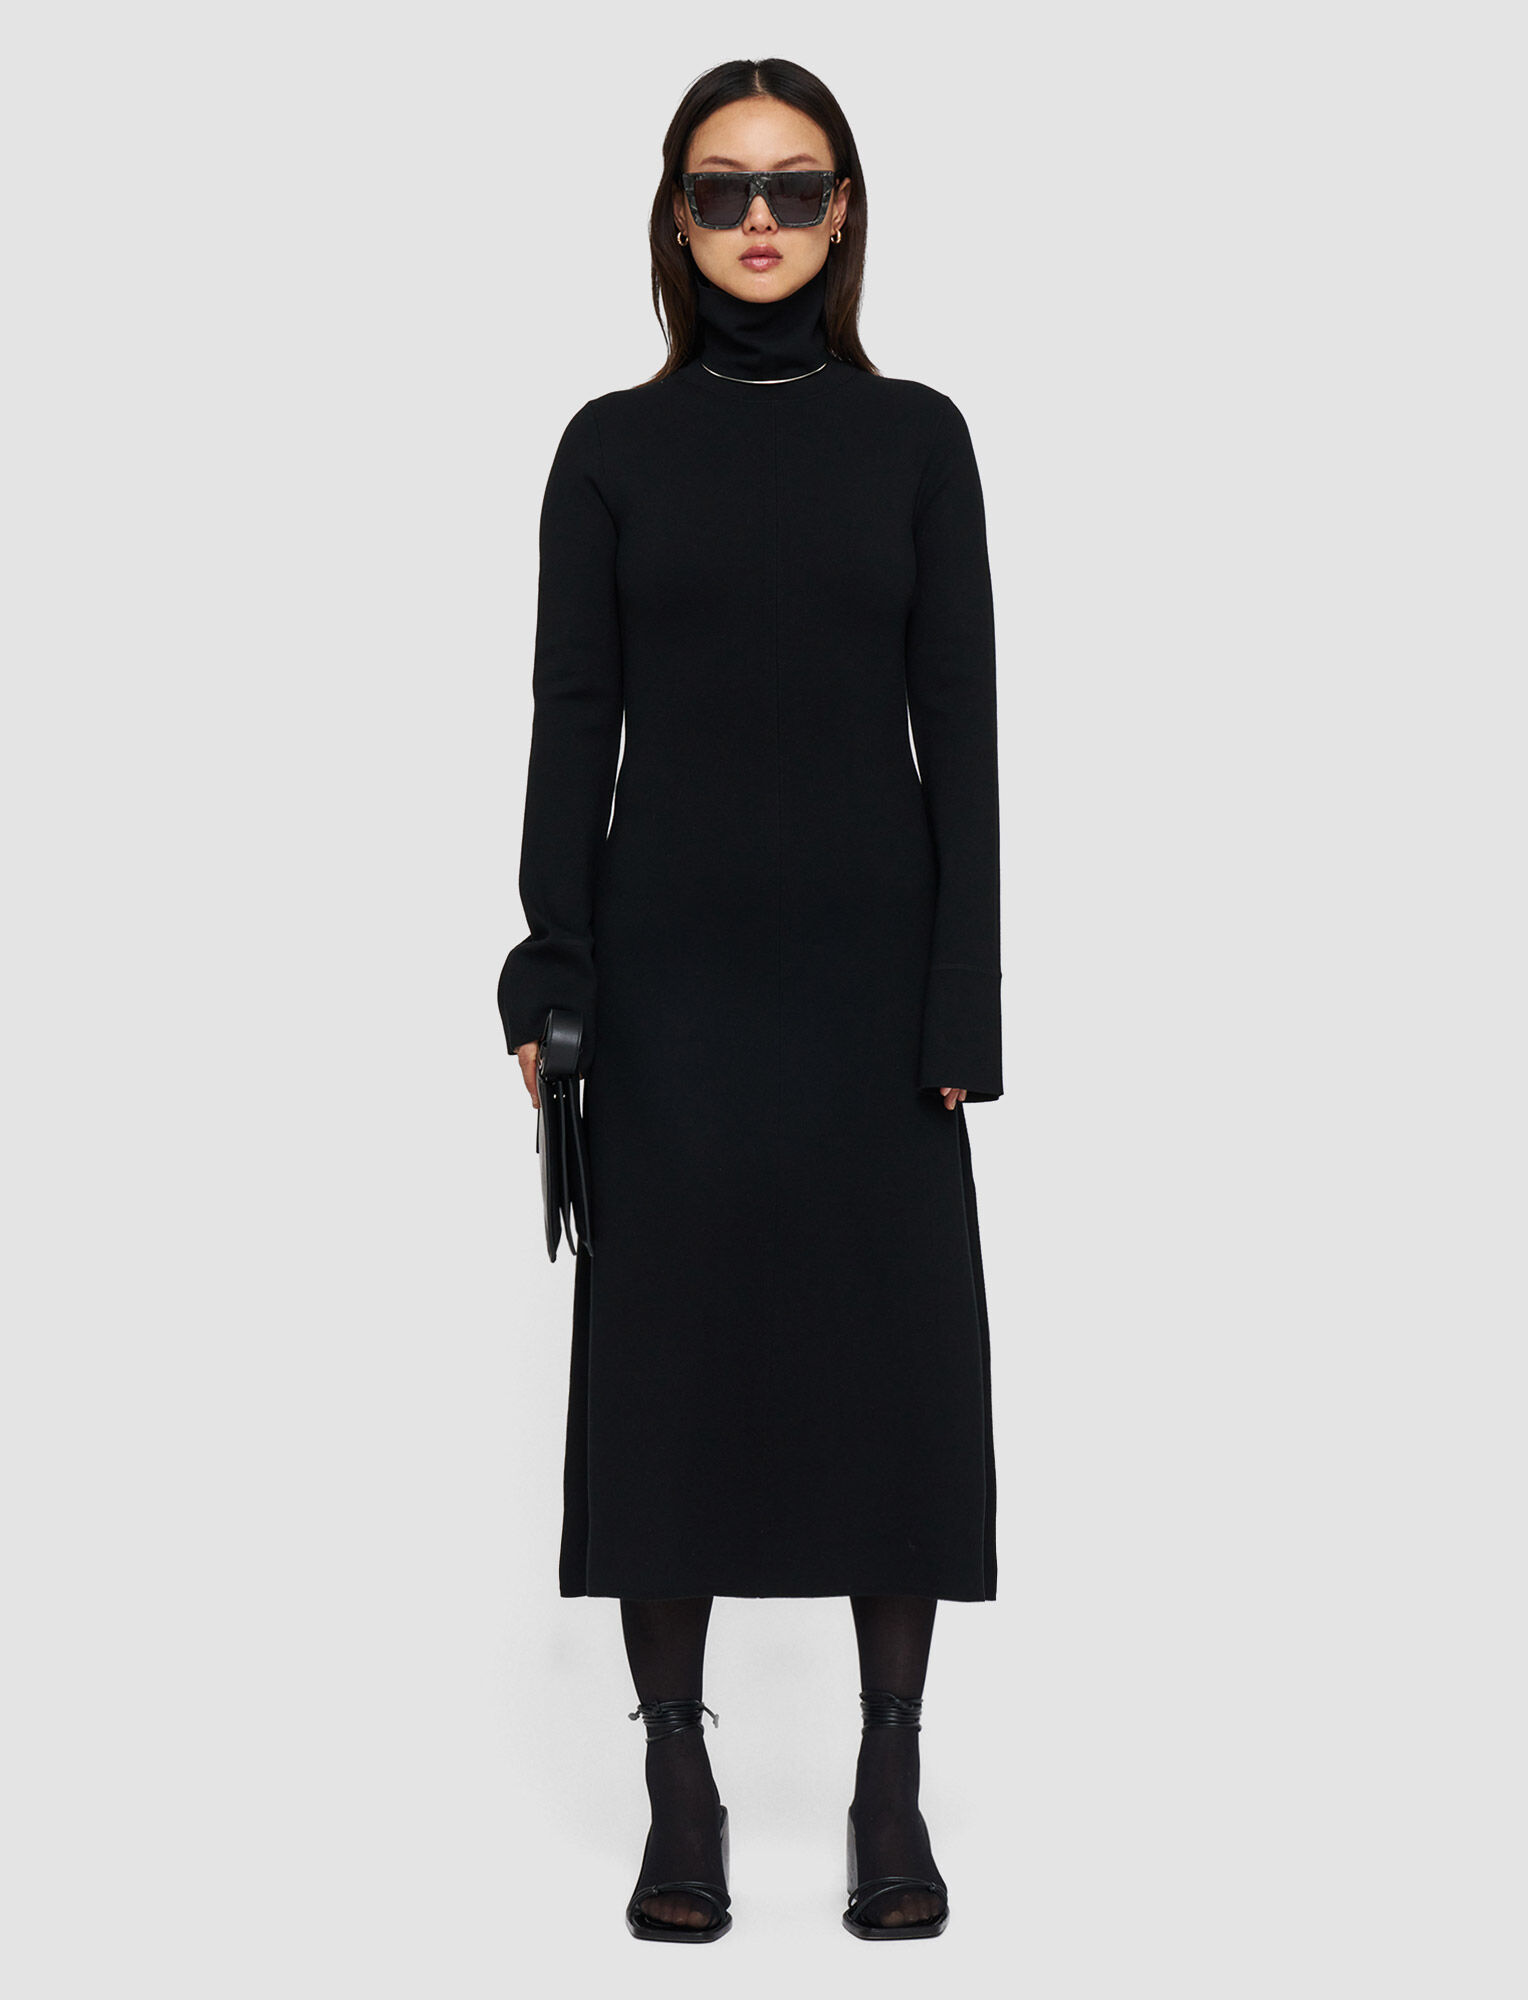 Silk Stretch Dress in Black | JOSEPH US